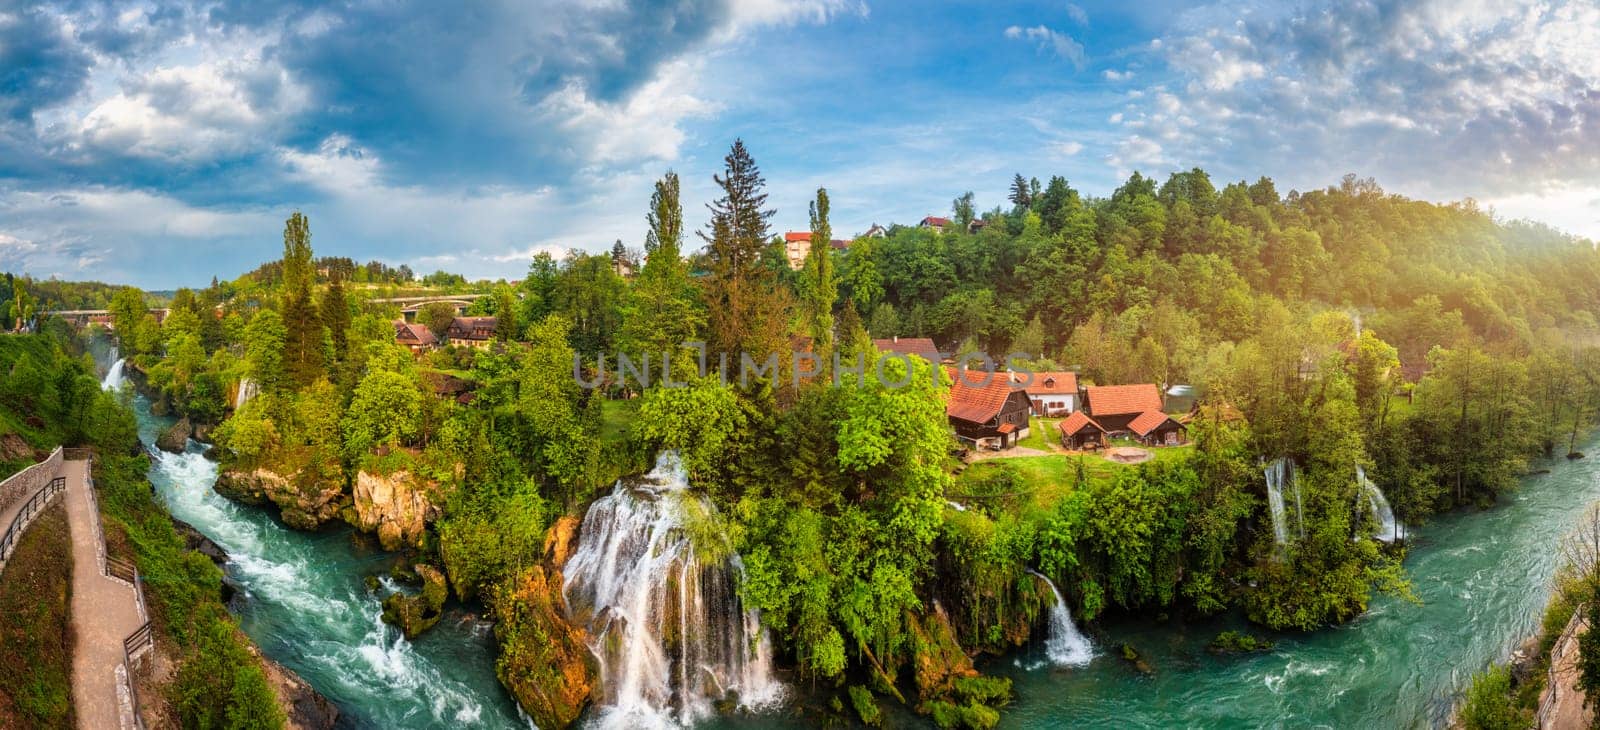 Village of Rastoke near Slunj in Croatia, old water mills on waterfalls of Korana river, beautiful countryside landscape. Landscape with river and little waterfalls in Rastoke village, Croatia.